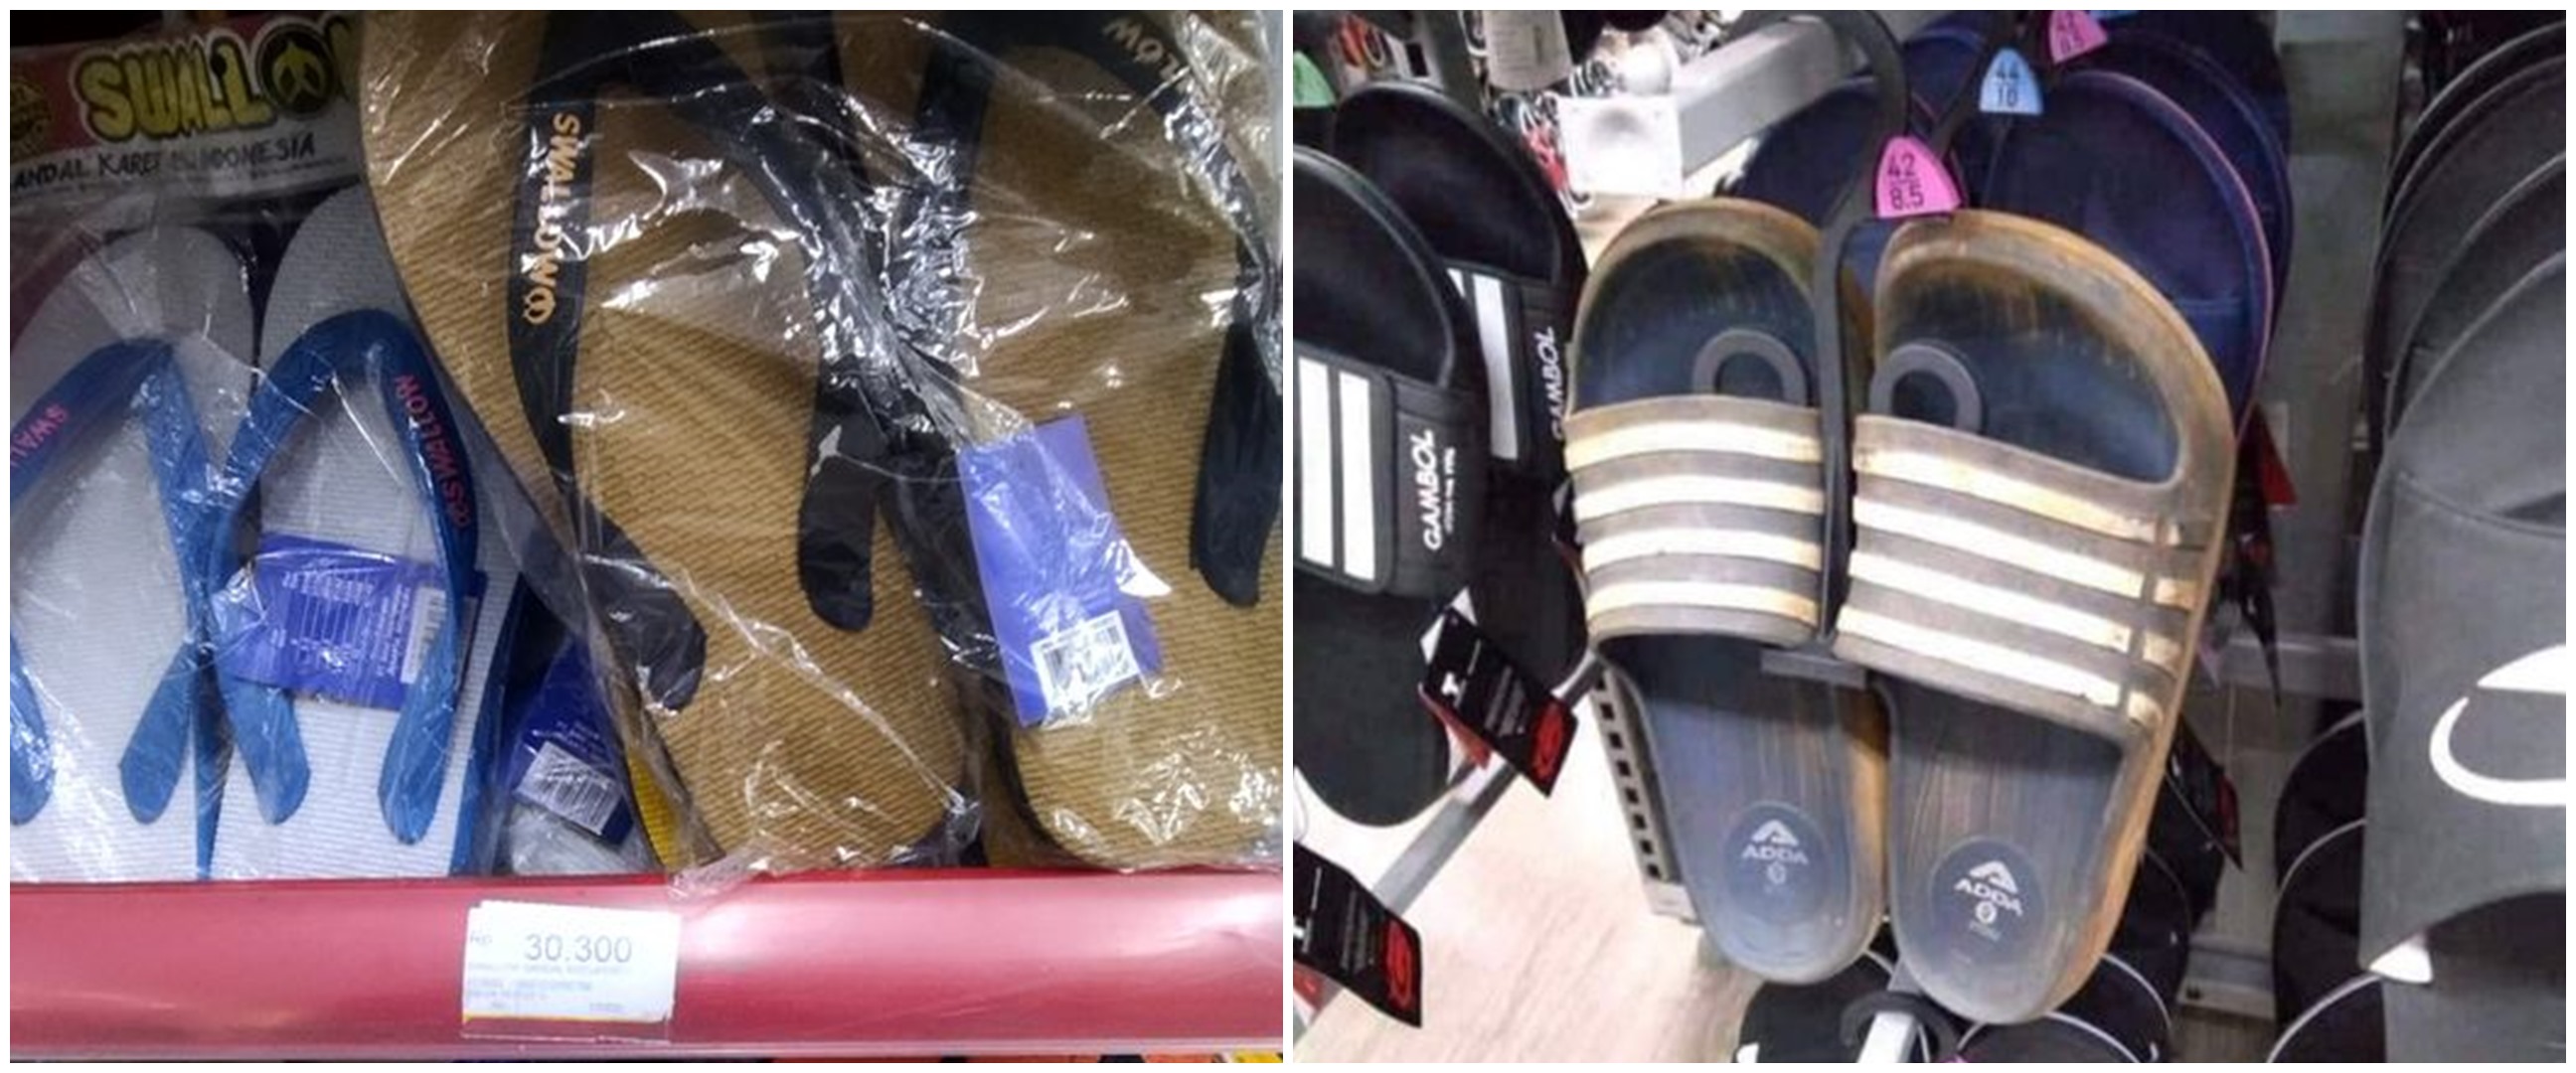 9 Momen absurd sandal jepit diletakkan sembarang tempat